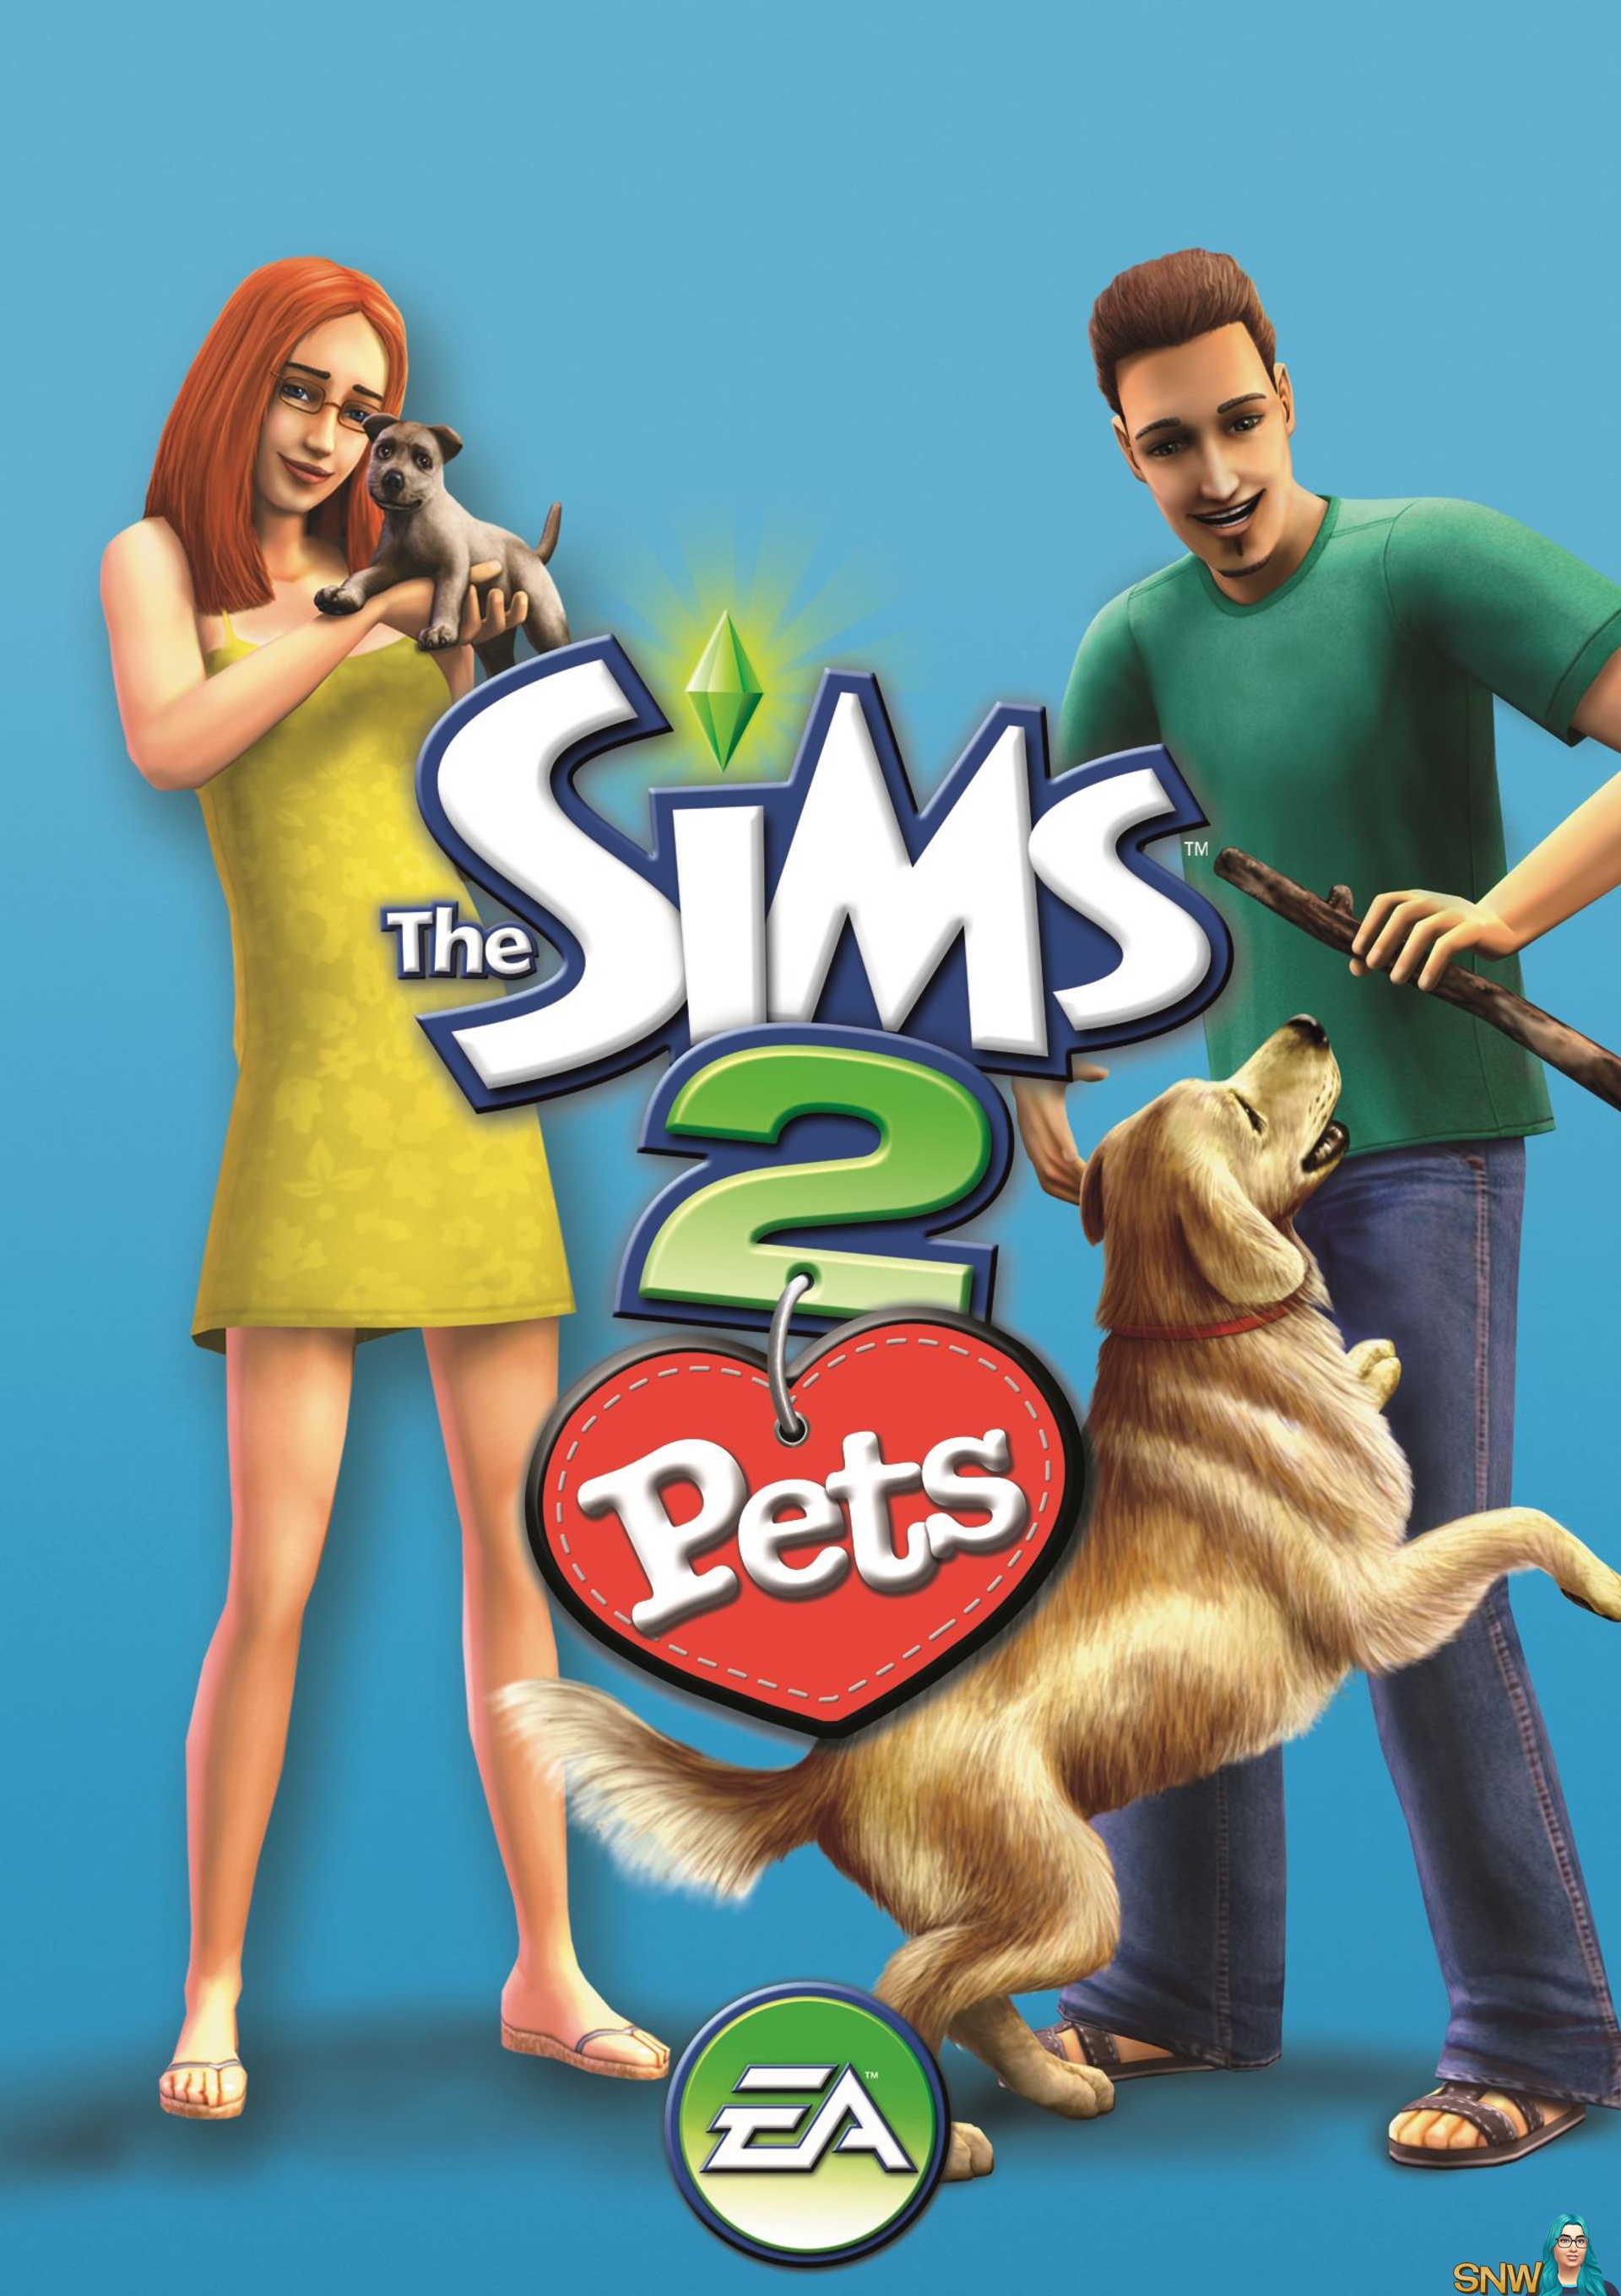 Симс петс. The SIMS 2: питомцы. The SIMS 2: питомцы обложка. The SIMS 3 питомцы обложка. The SIMS 2: Pets (для игровых приставок).